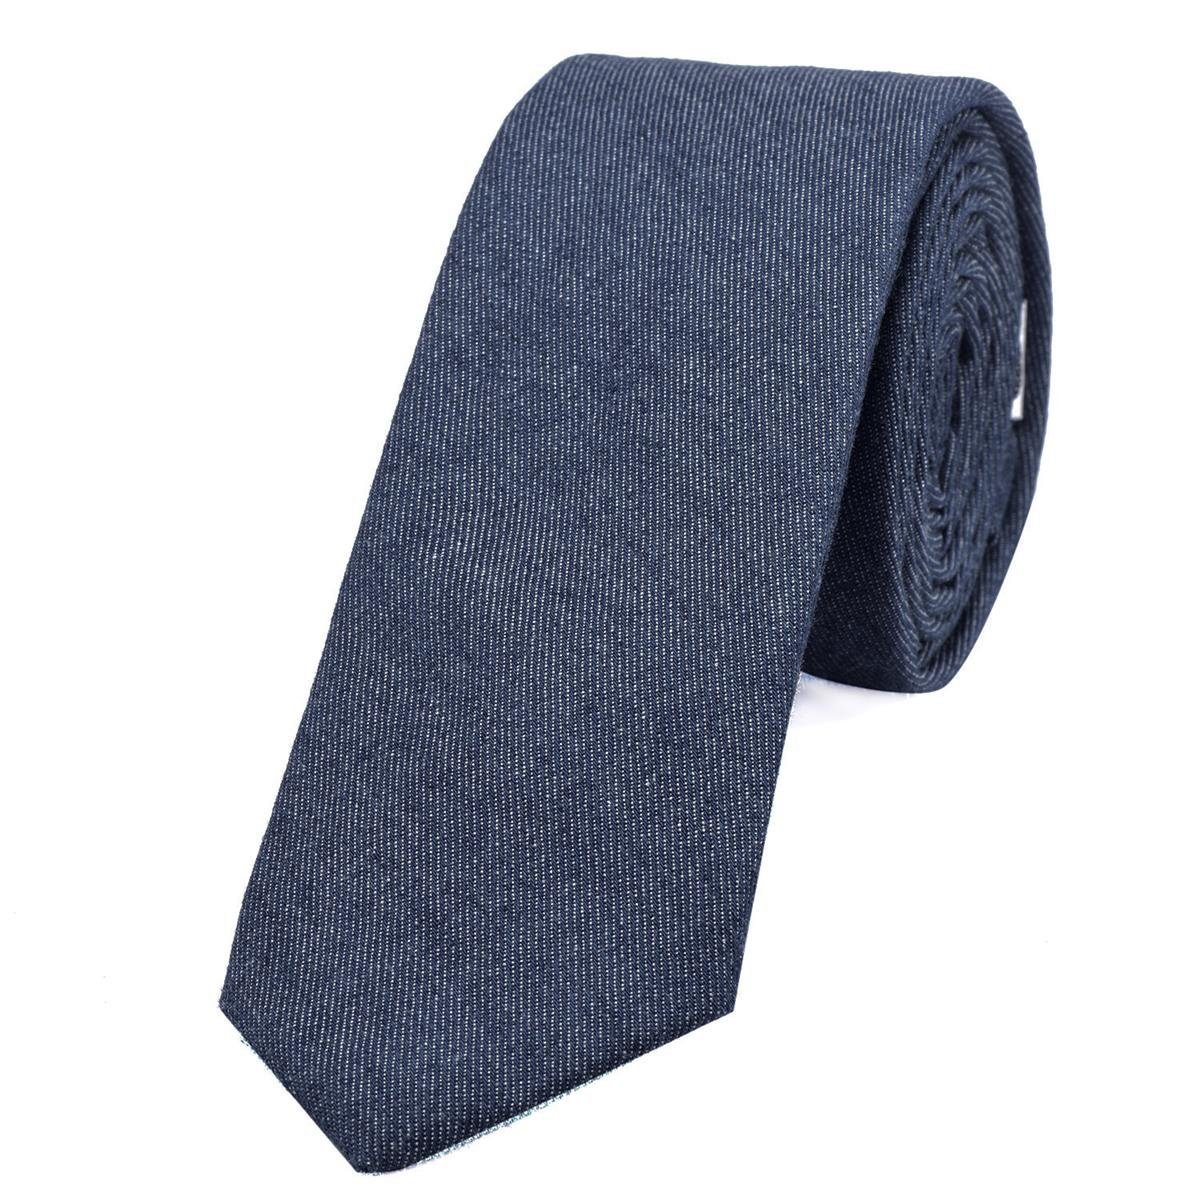 DonDon Krawatte Herren Krawatte 6 cm einfarbig kariert und gepunkt (Packung, 1-St., 1x Krawatte) Baumwolle, verschiedene Muster, für Büro oder festliche Veranstaltungen jeans-blau